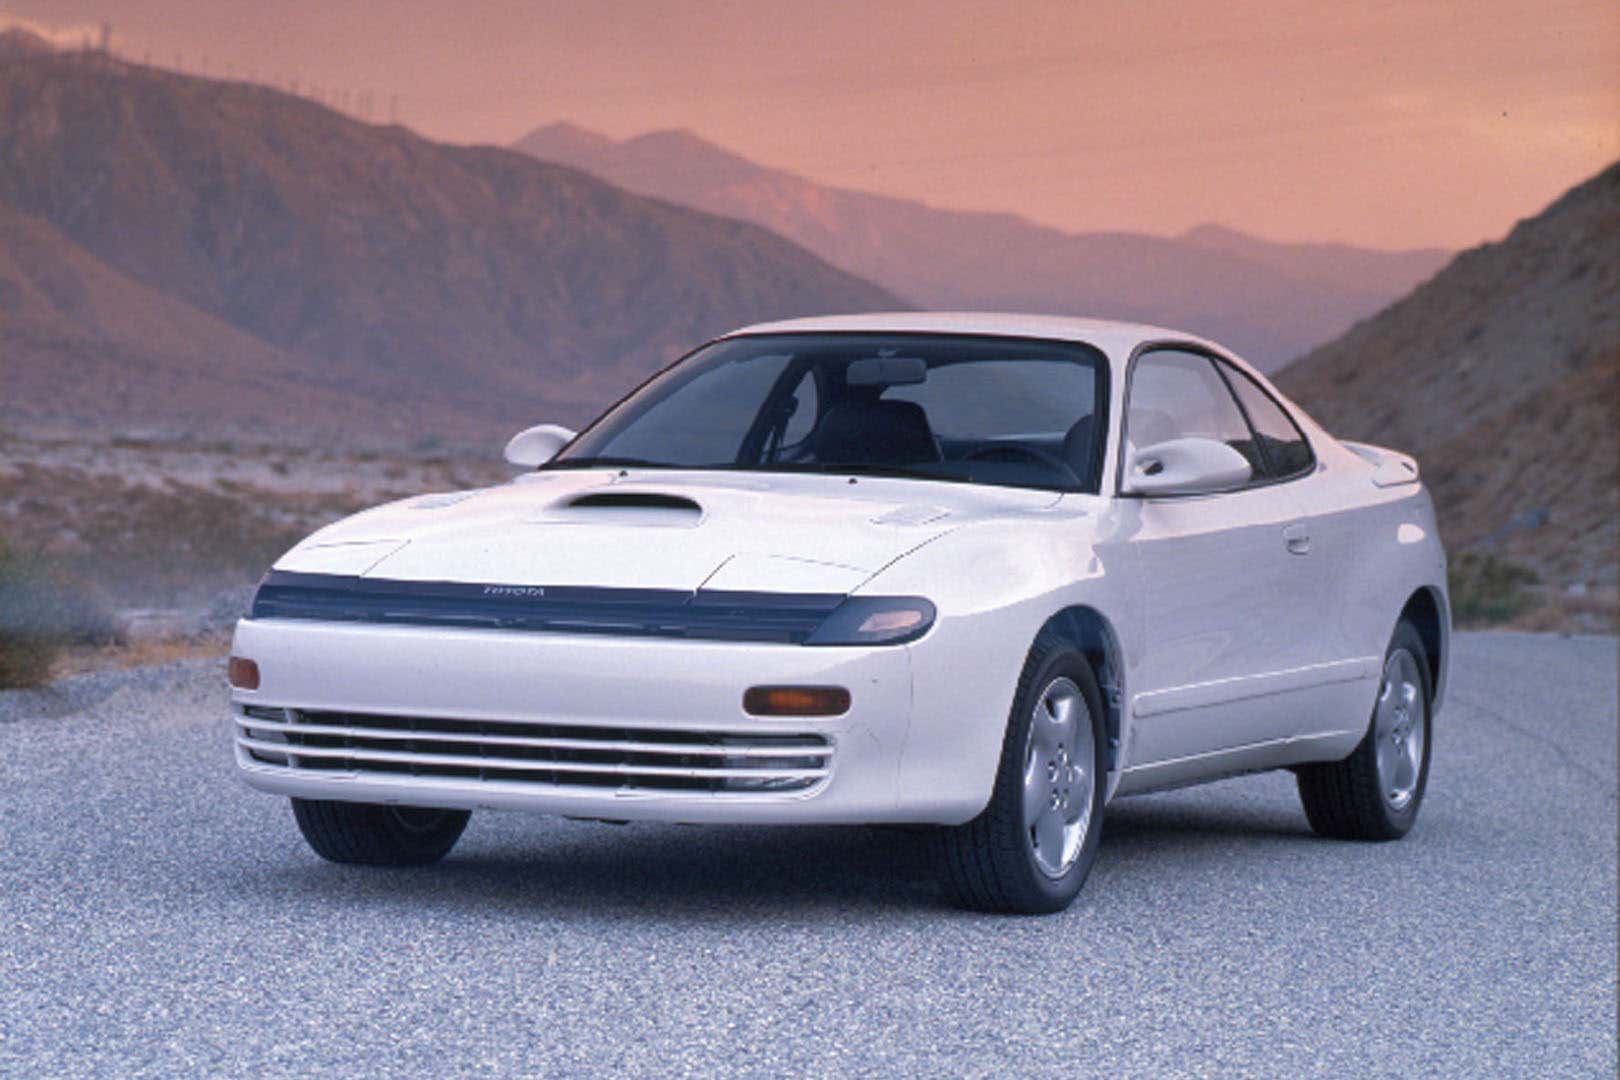 Toyota Celica - Xe thể thao huyền thoại một thời với hệ thống truyền động "không giống ai".